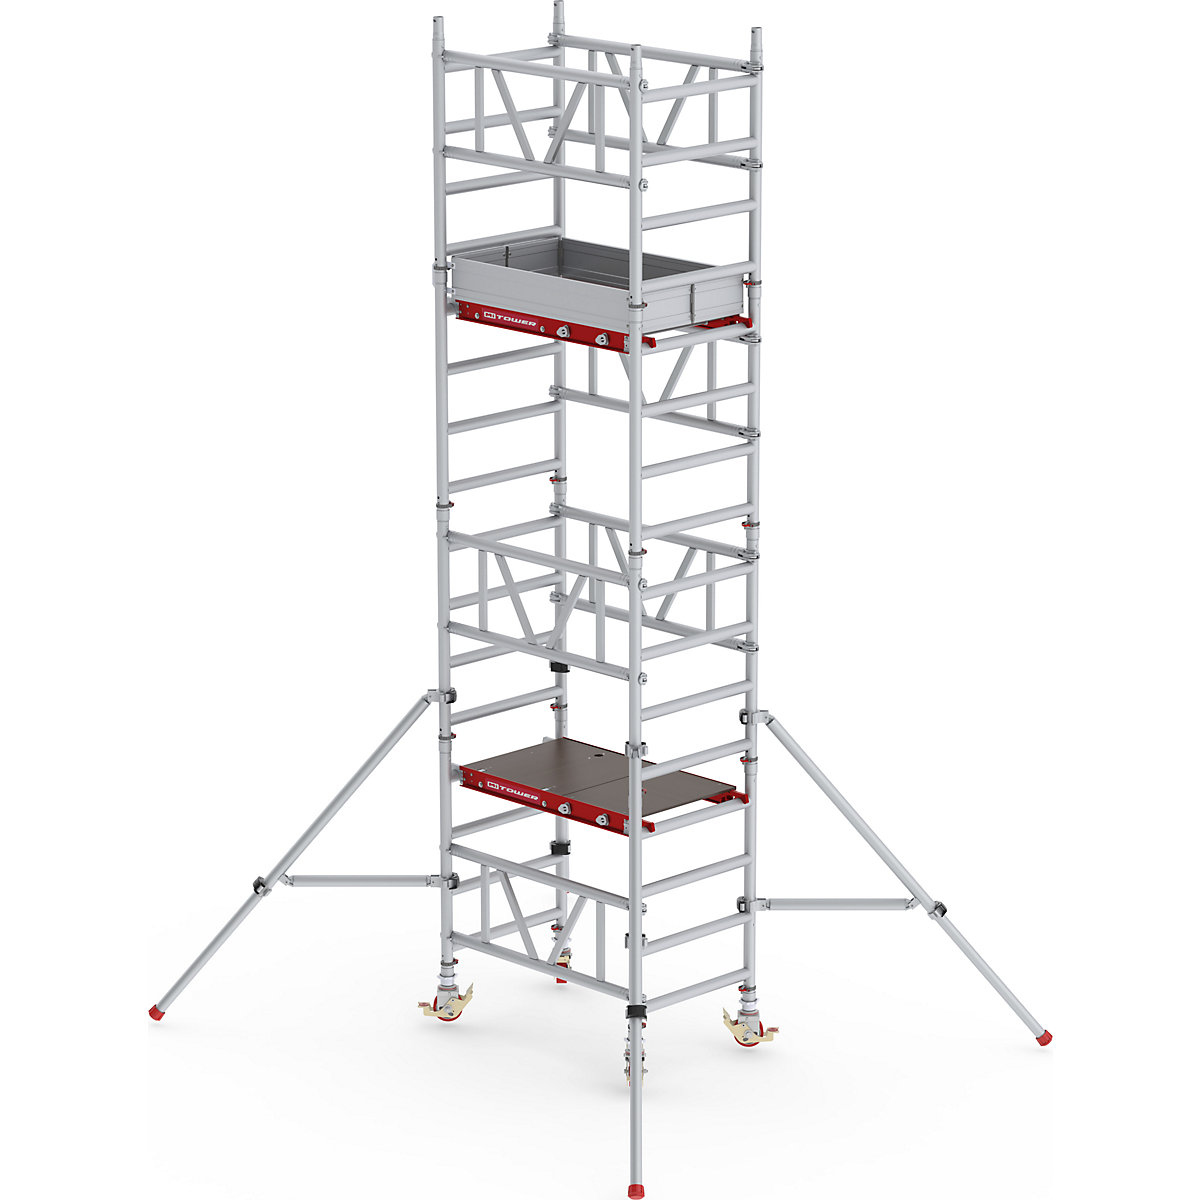 Snelbouw-rolsteiger MiTOWER Standaard – Altrex, houten platform, l x b = 1200 x 750 mm, werkhoogte 5 m-25